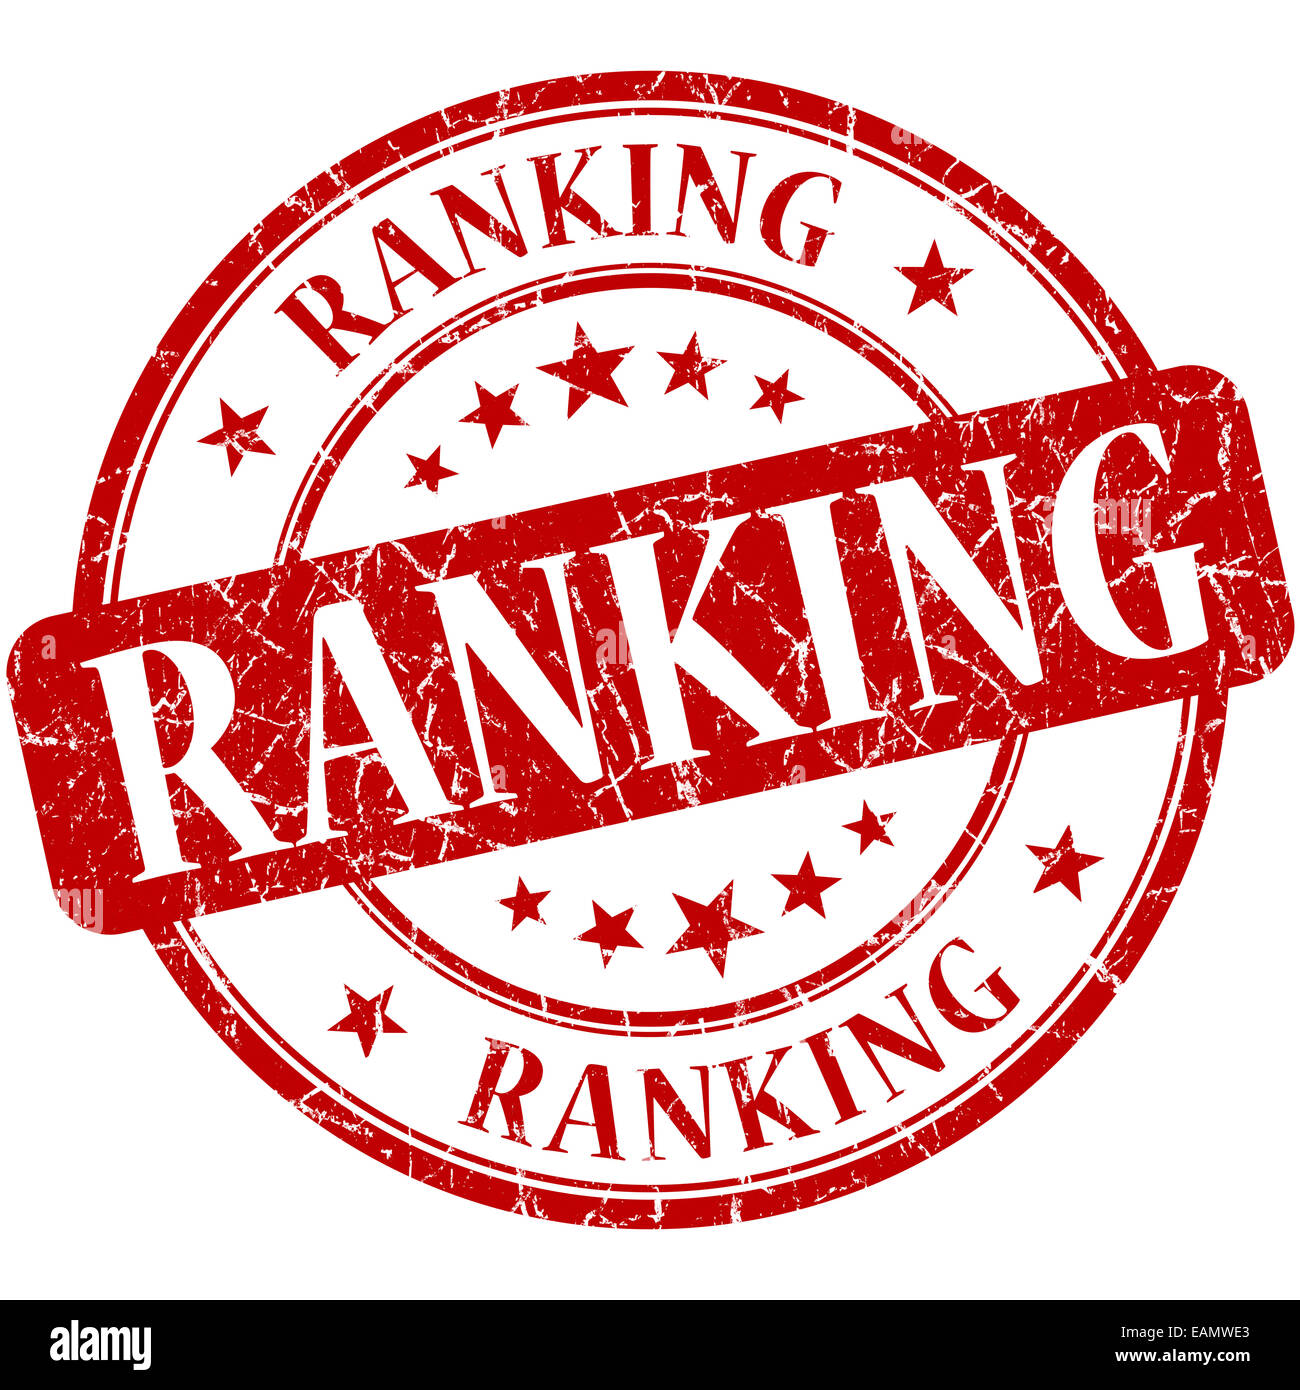 Ranking grunge red round stamp Stock Photo